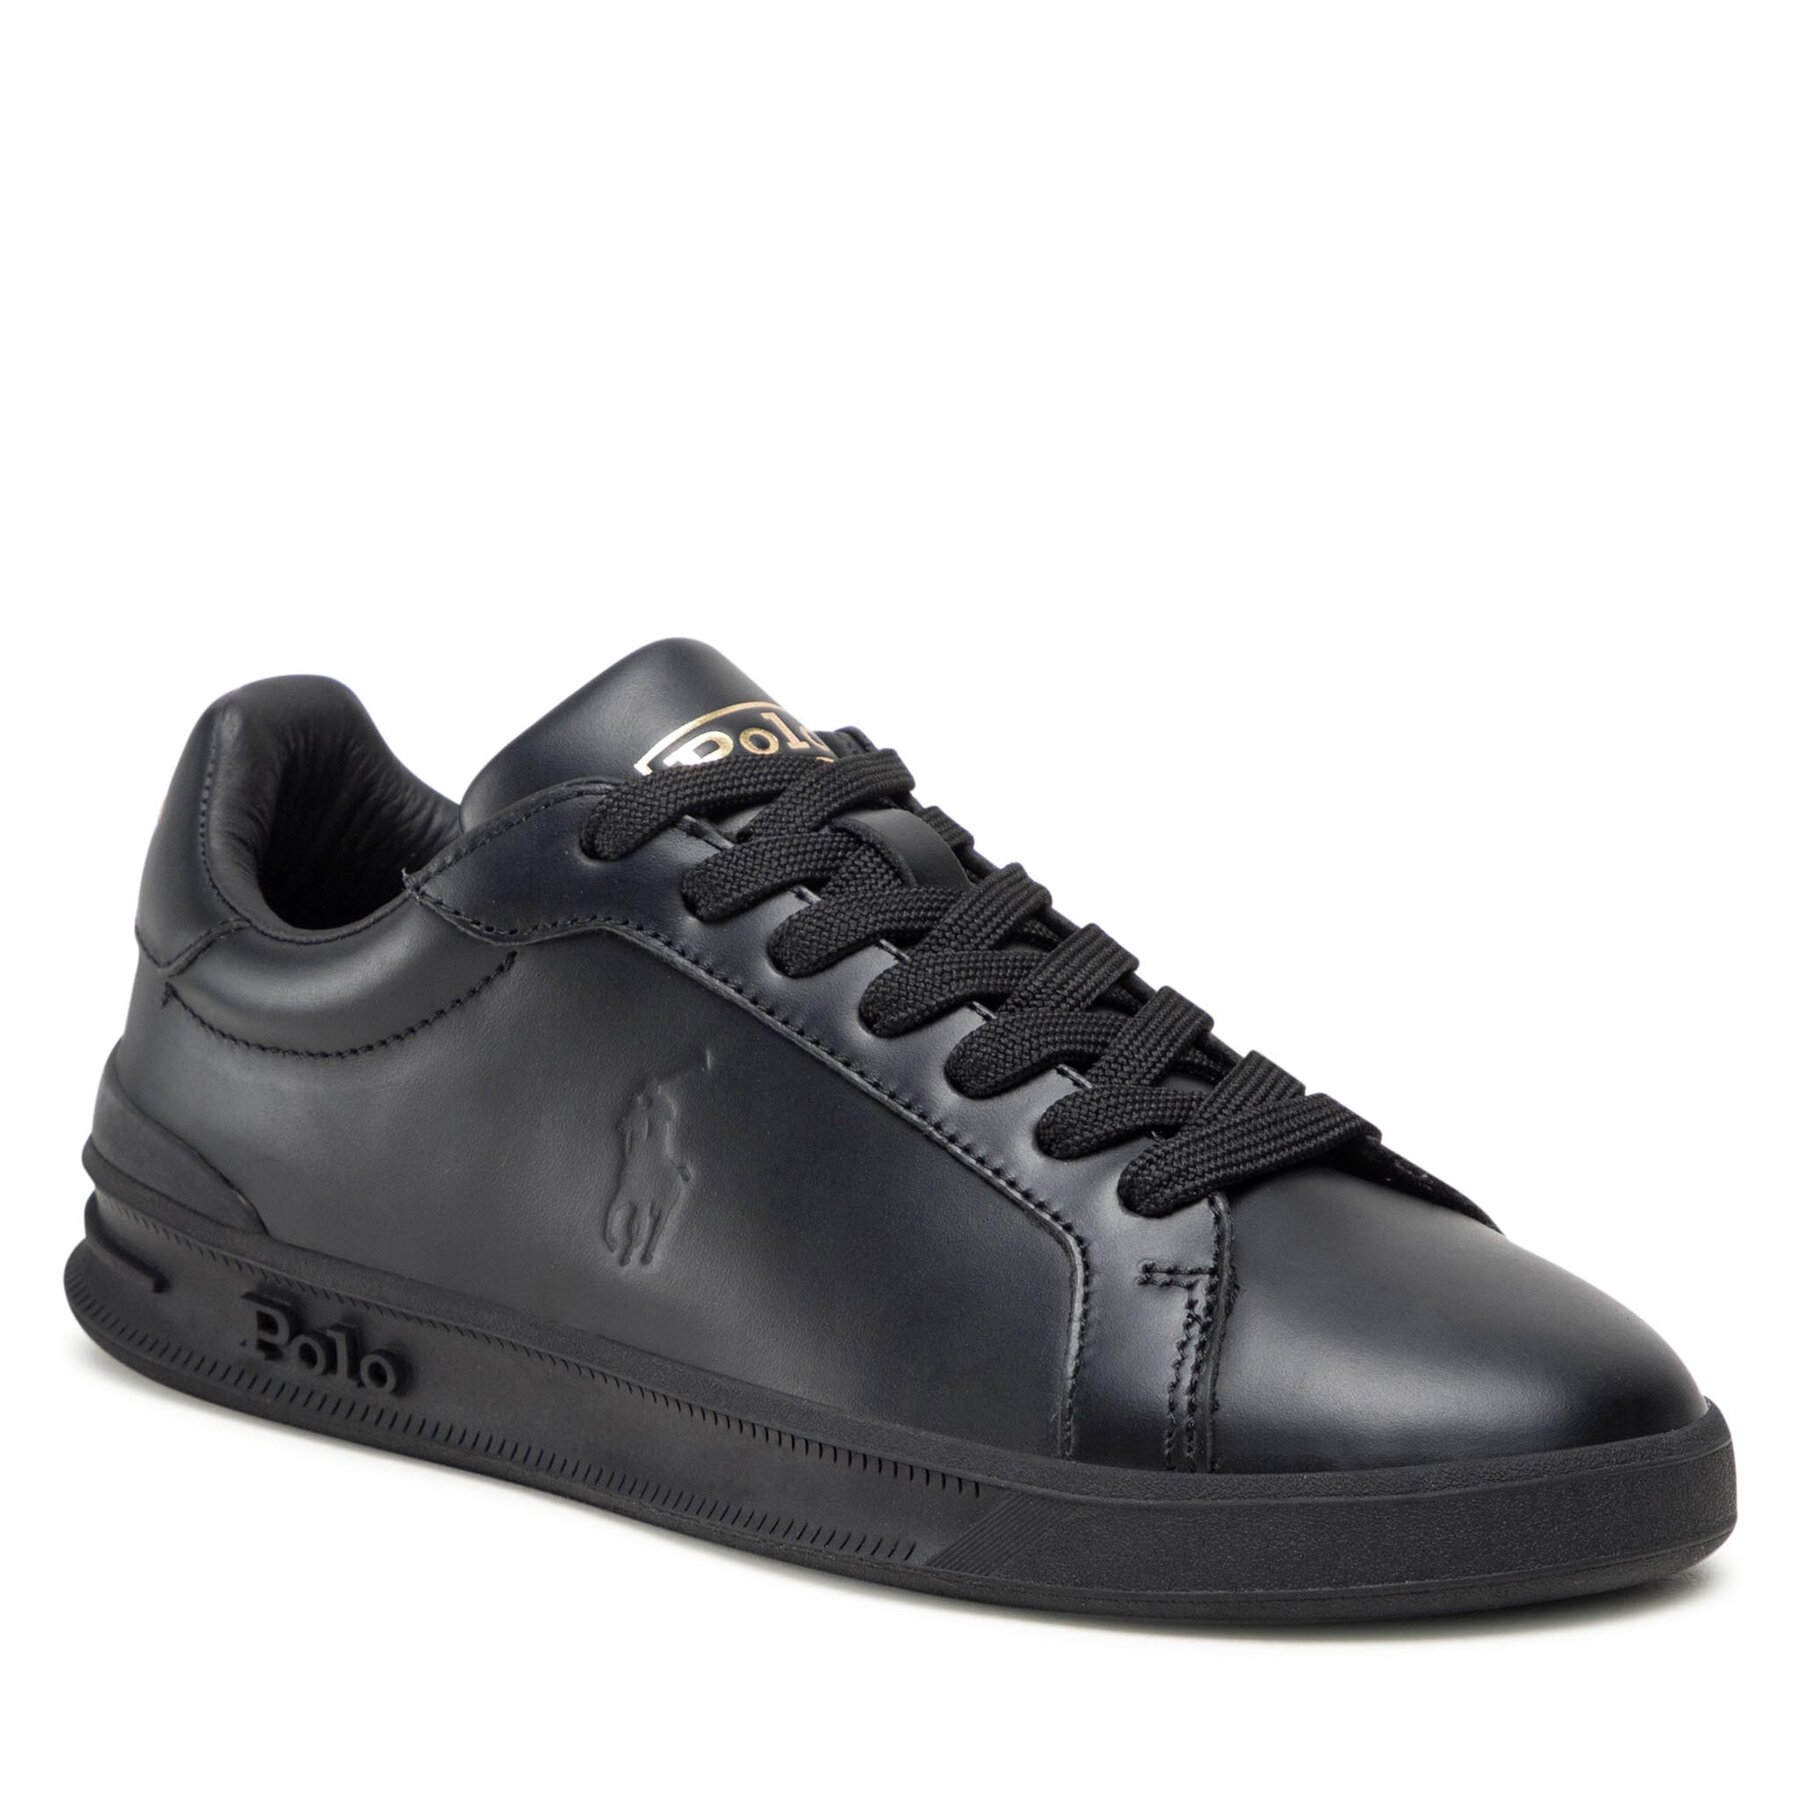 Sneakers Polo Ralph Lauren Hrt Ct II 809845110001 Black